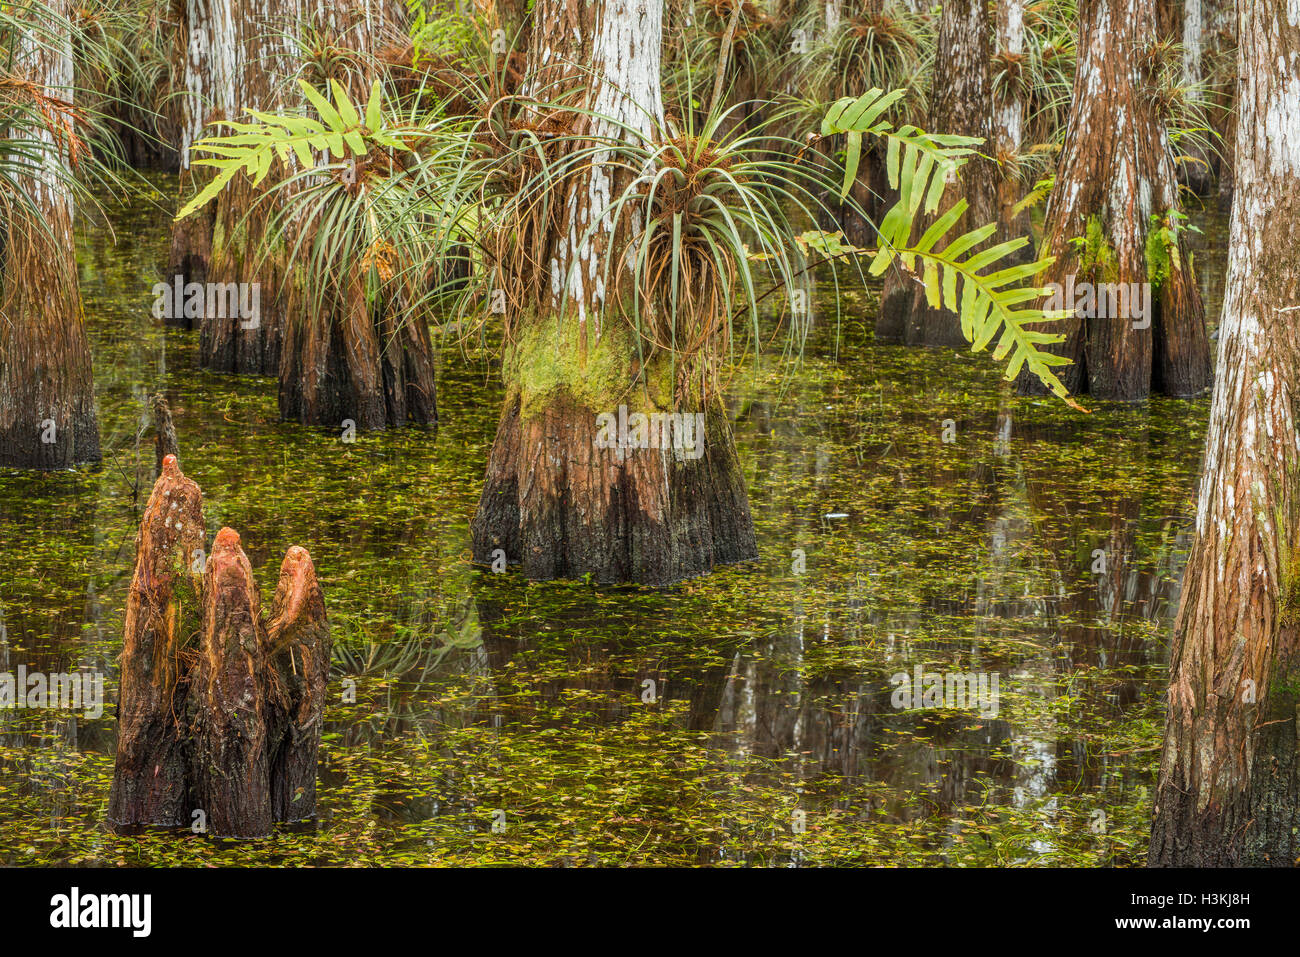 Vista interna di una cupola di cipressi con la sua felci, bromeliacee, cipresso calvo e cipresso calvo le ginocchia - Parco nazionale delle Everglades Foto Stock